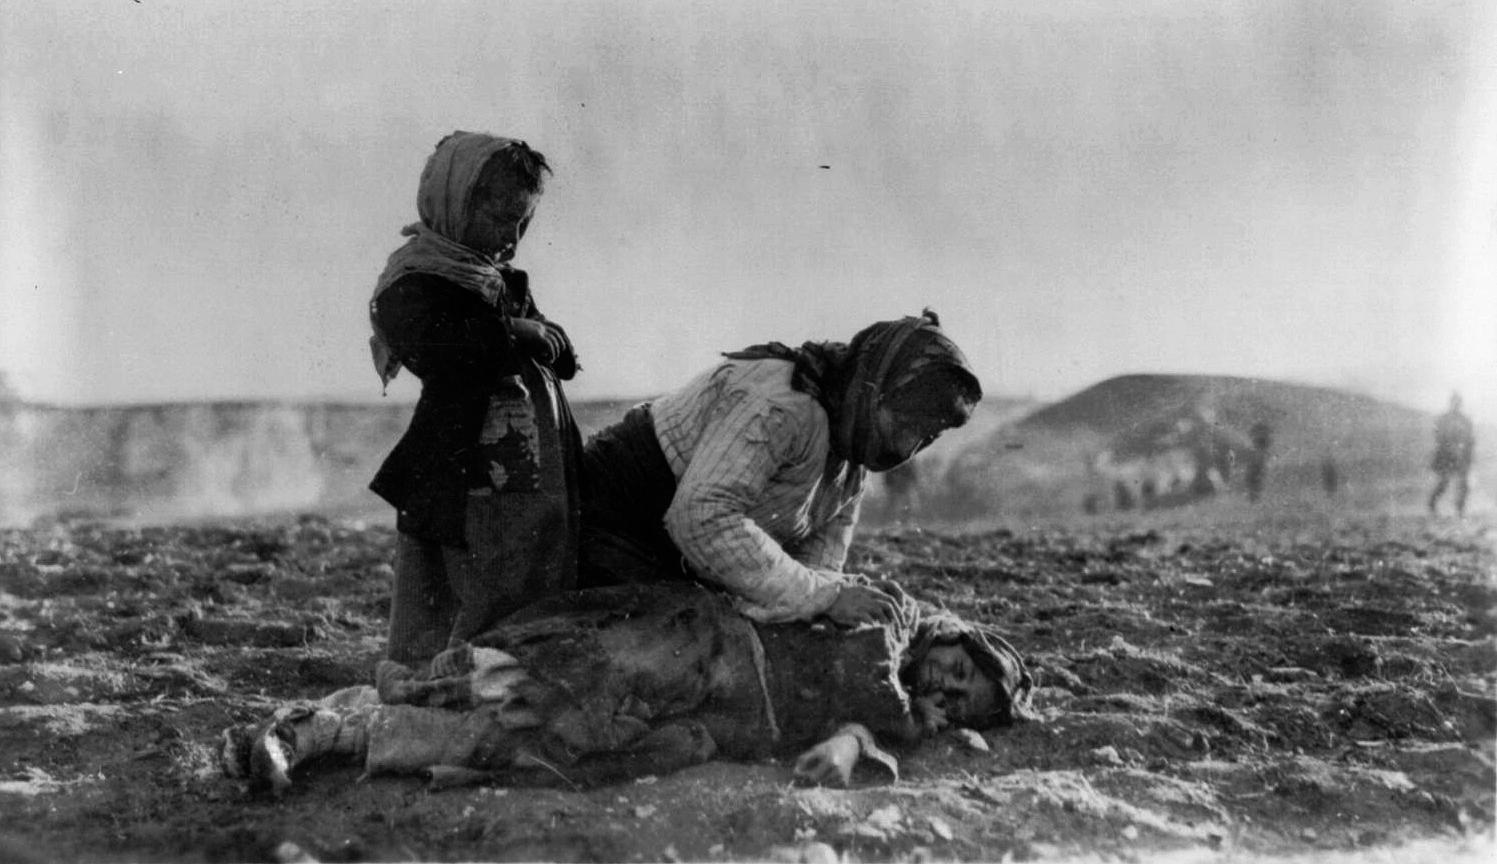 En una de las caravanas de la muerte, una mujer se arrodilla junto al cadáver de un niño, cerca de Alepo. Fuente: George Grantham Bain Collection. Biblioteca del Congreso.